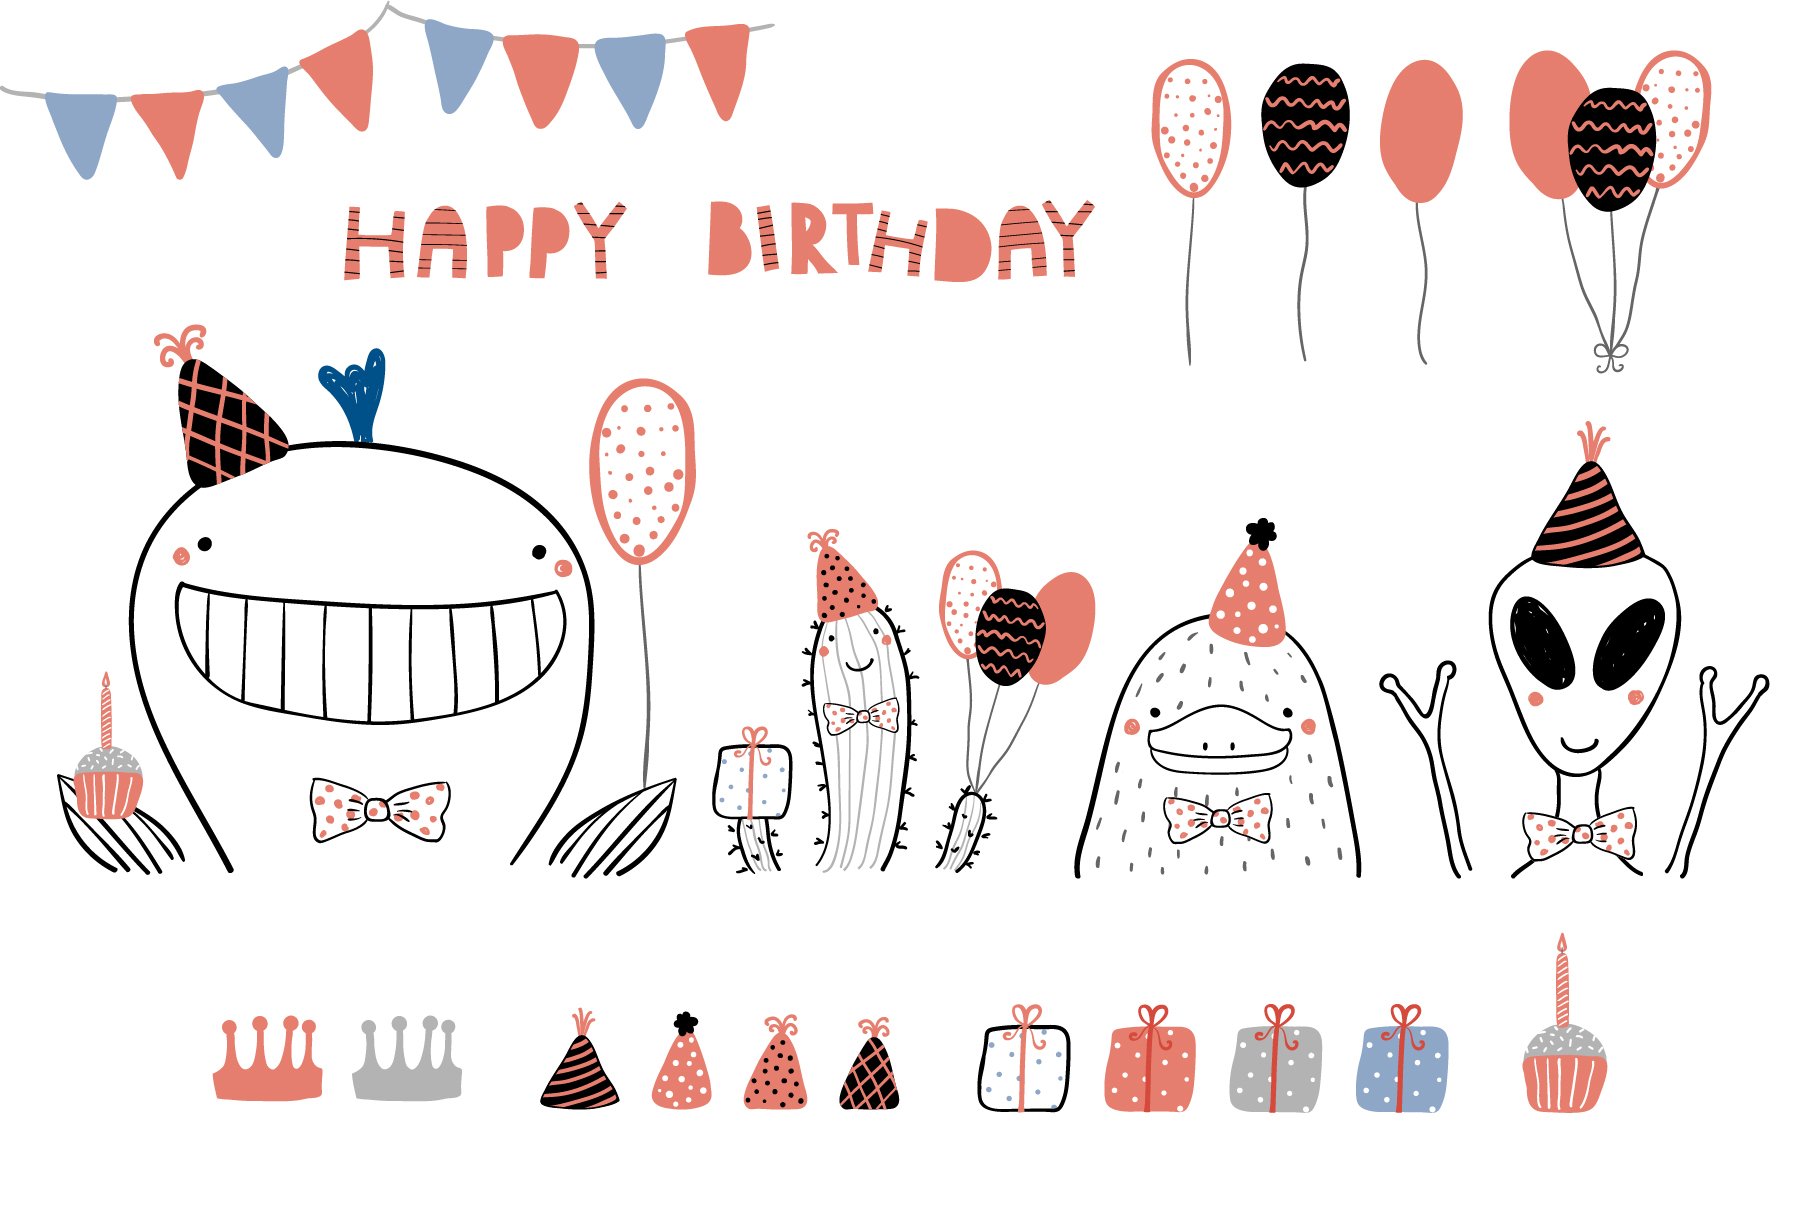 Happy birthday illustration.